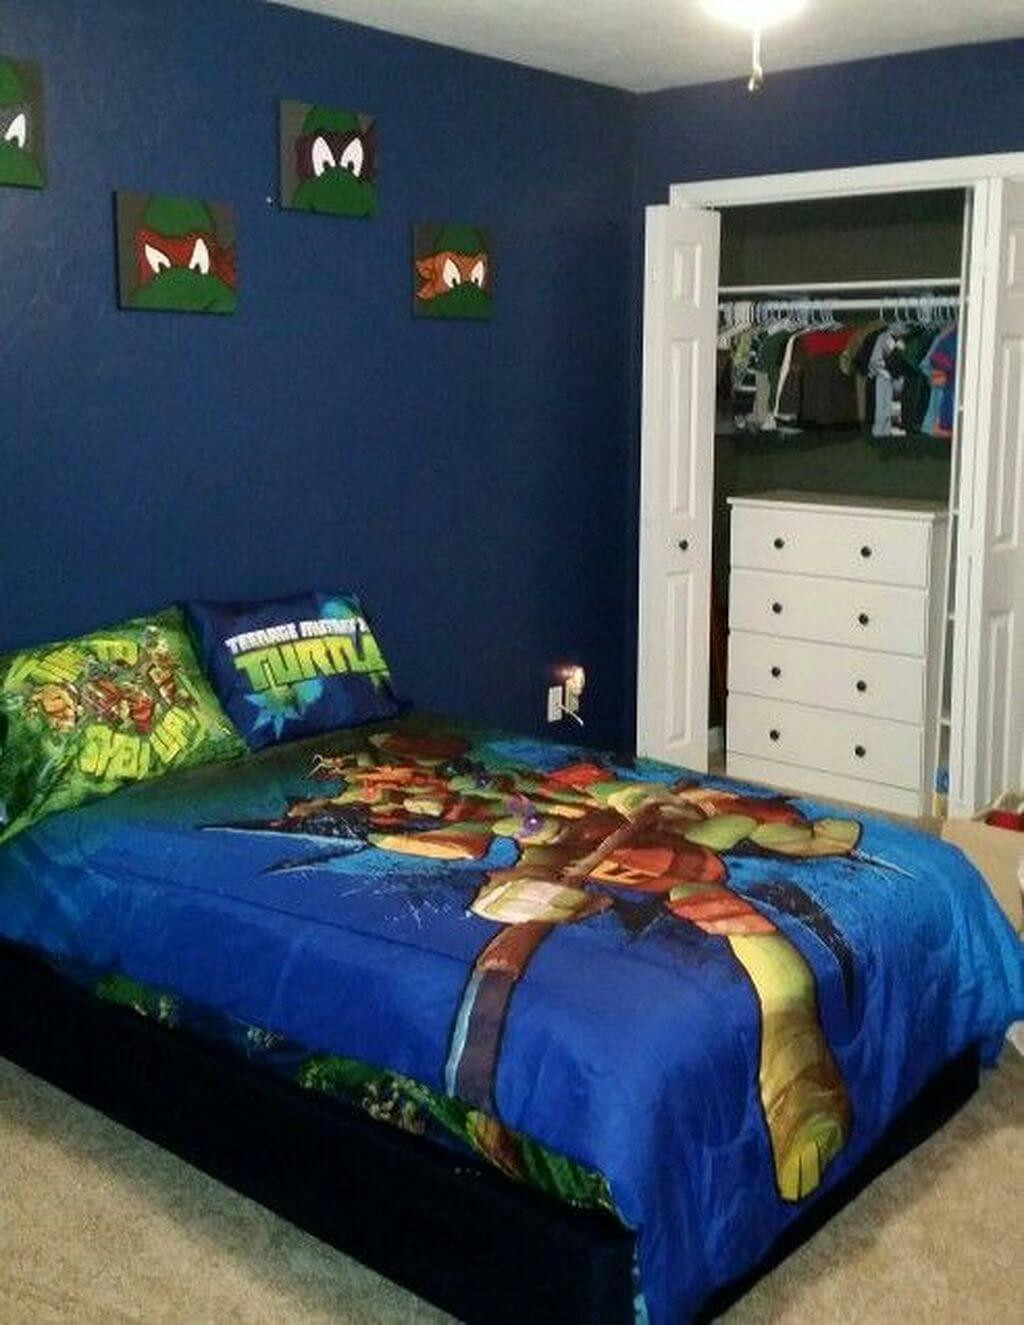 Ninja Turtles Bedroom Decorations
 10 Ninja Turtles Bedroom Ideas 2020 Toddlers and Kids